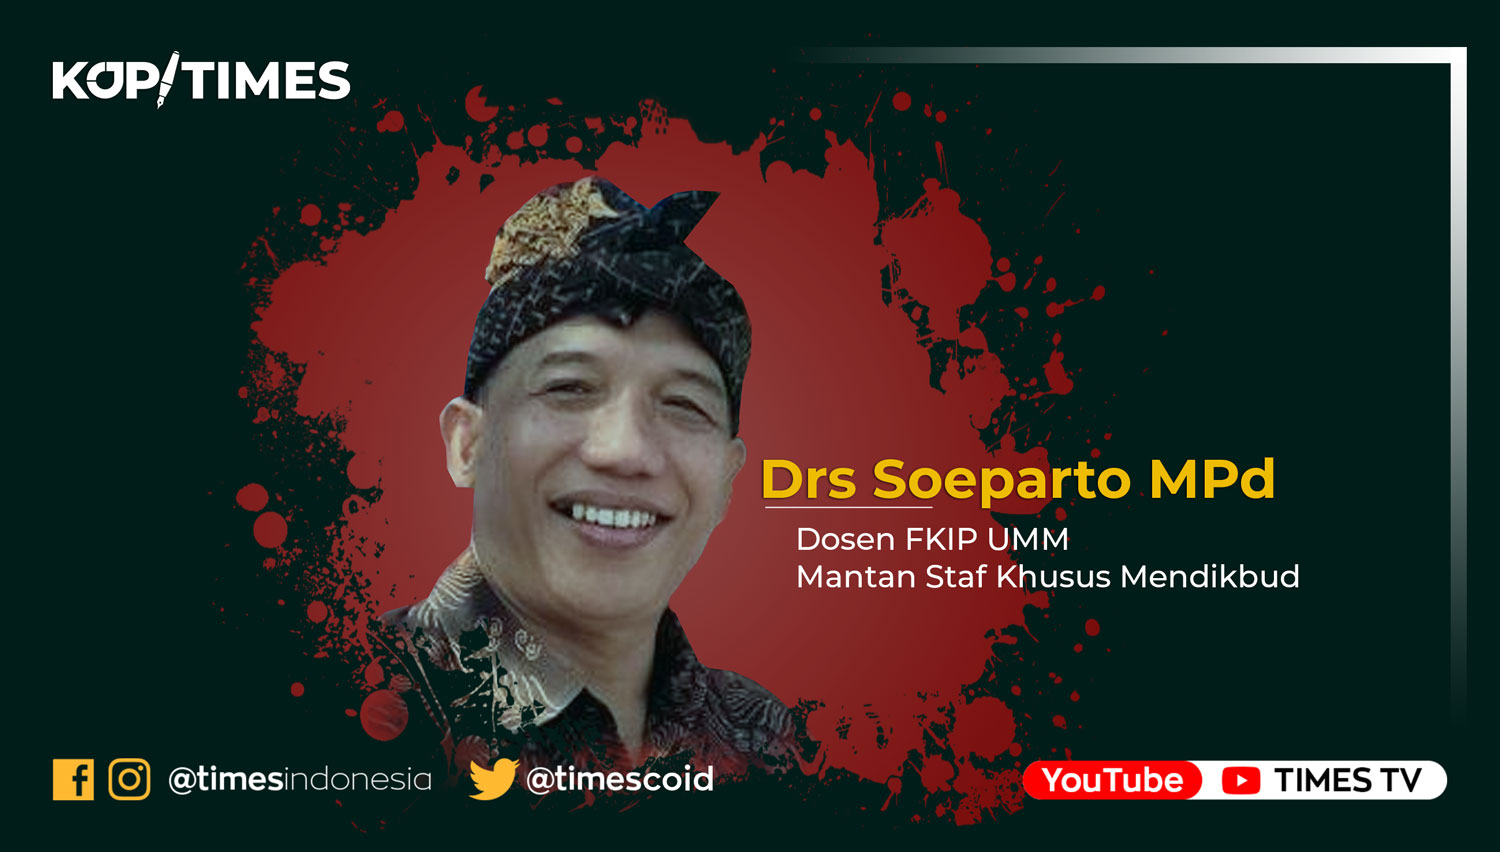 Drs Soeparto MPd. Dosen FKIP UMM